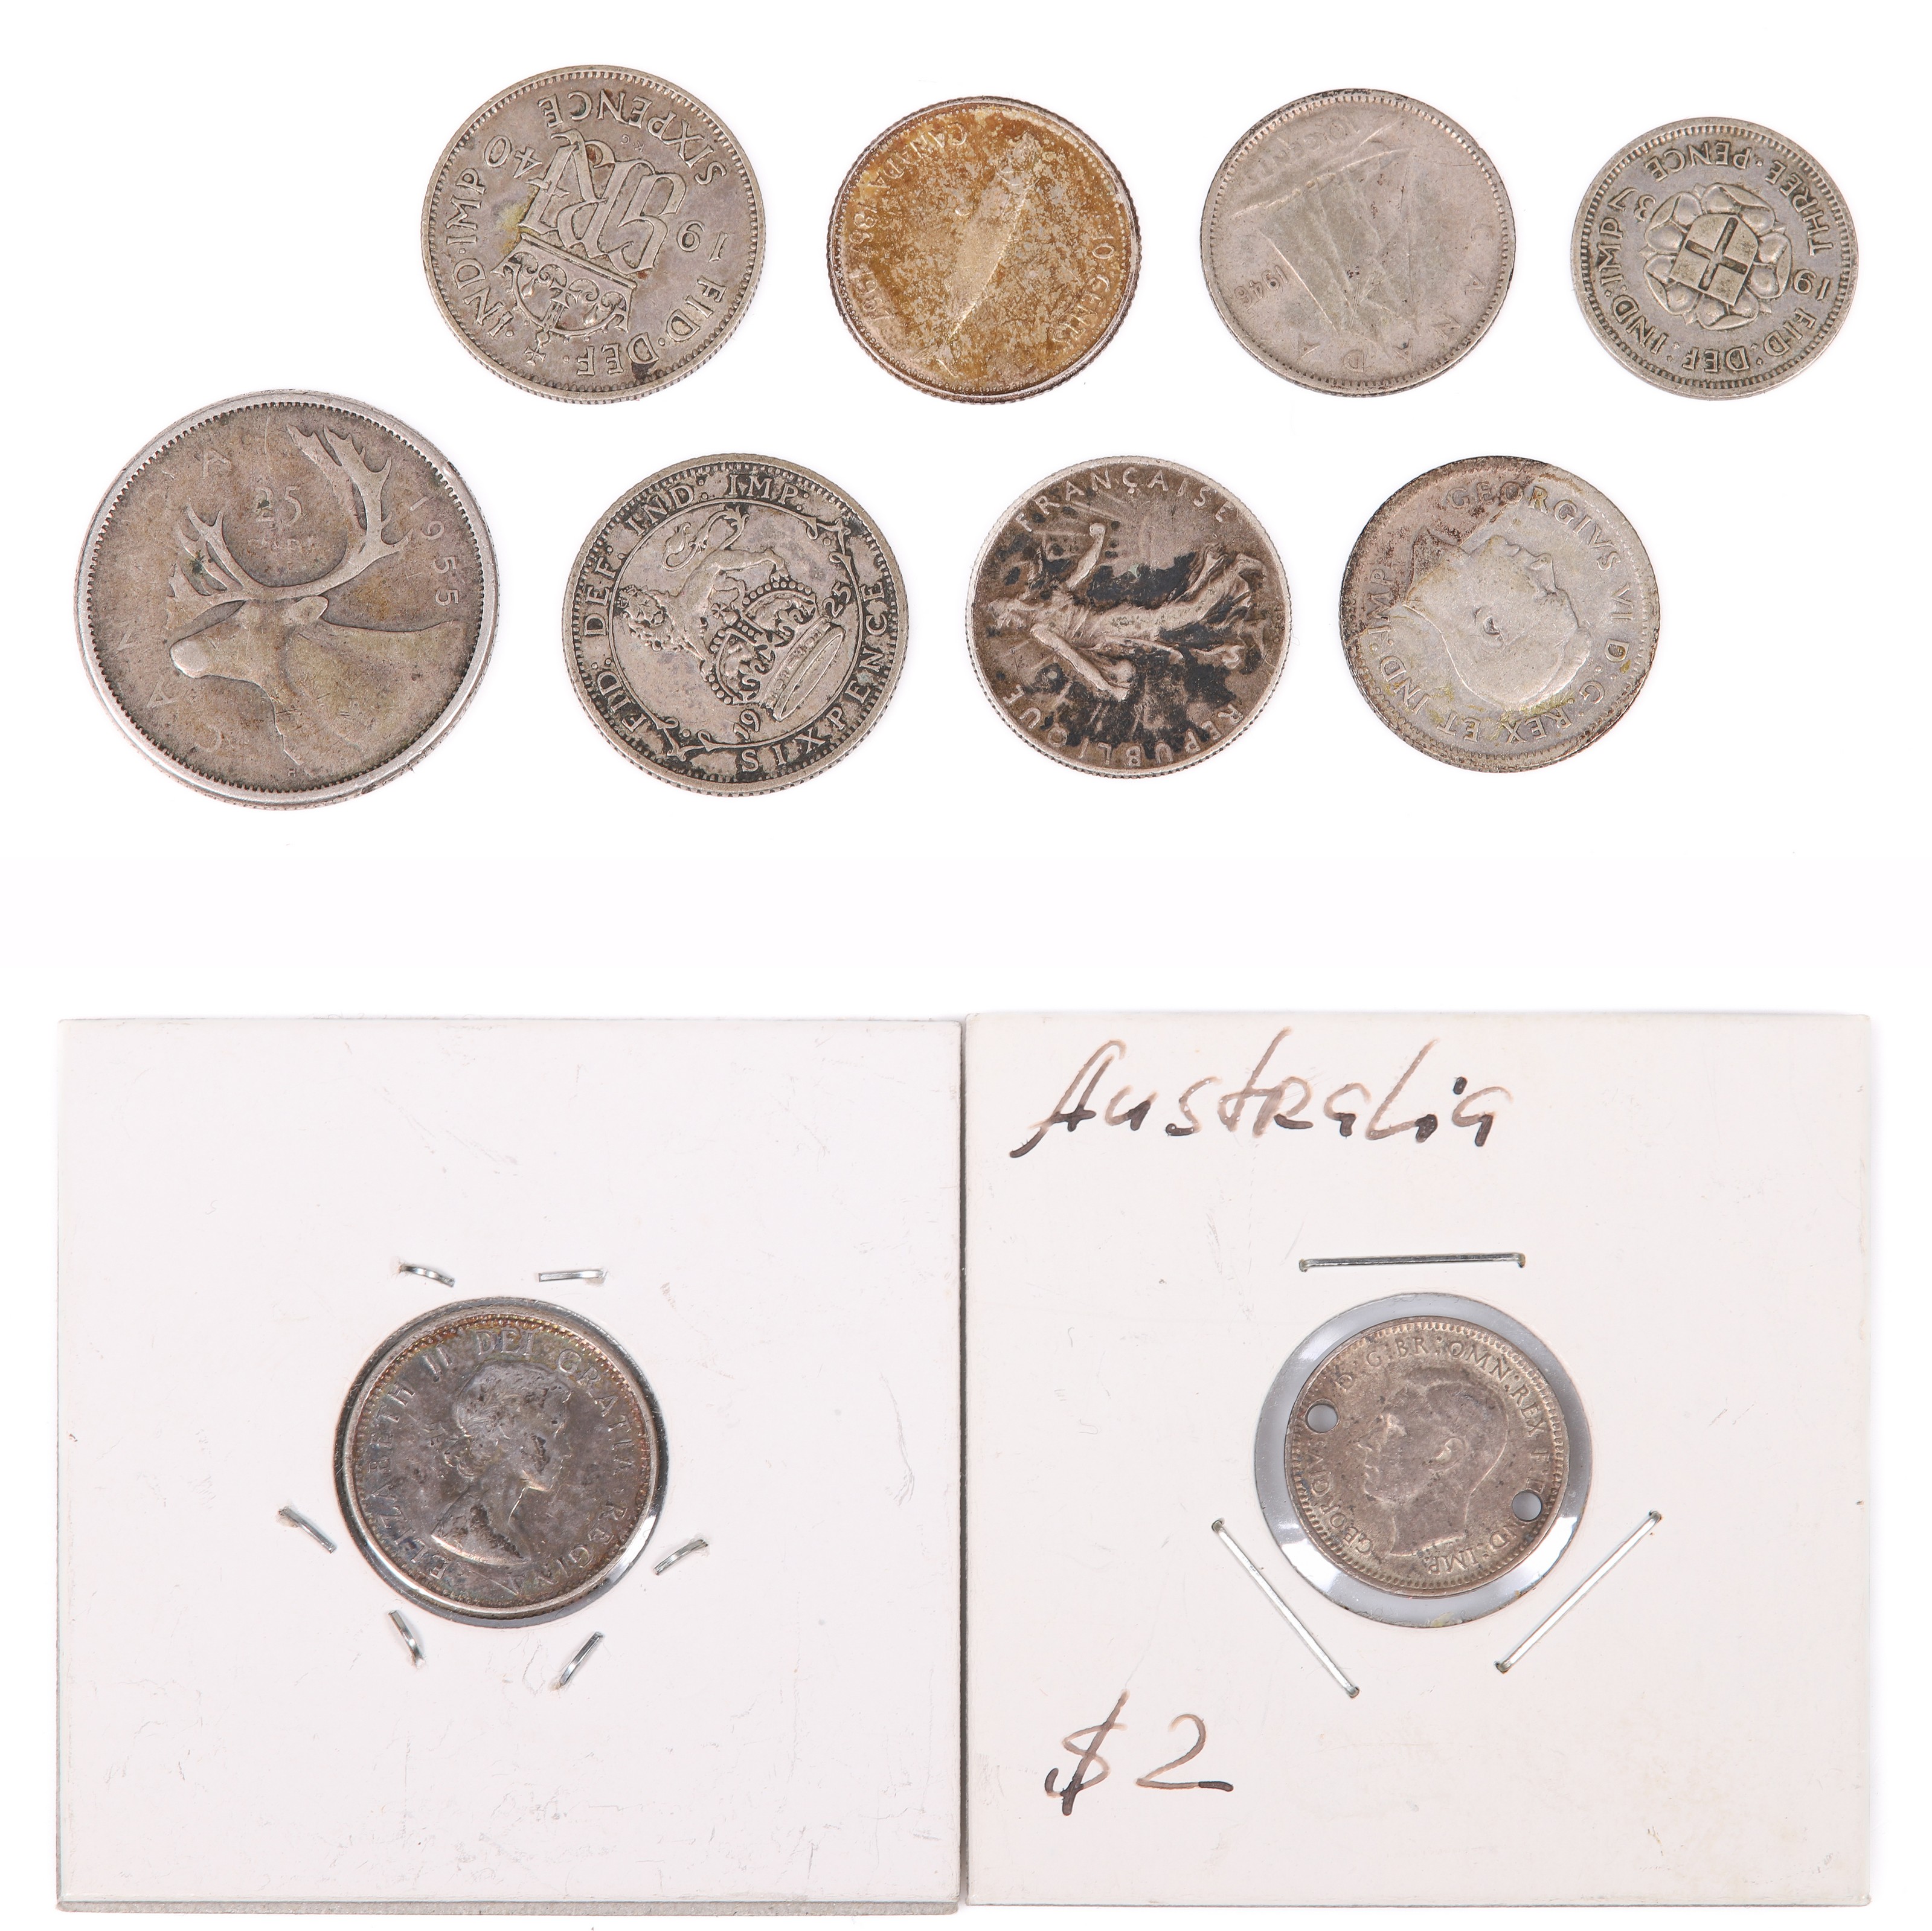 1955 Canadian silver quarter, 1963